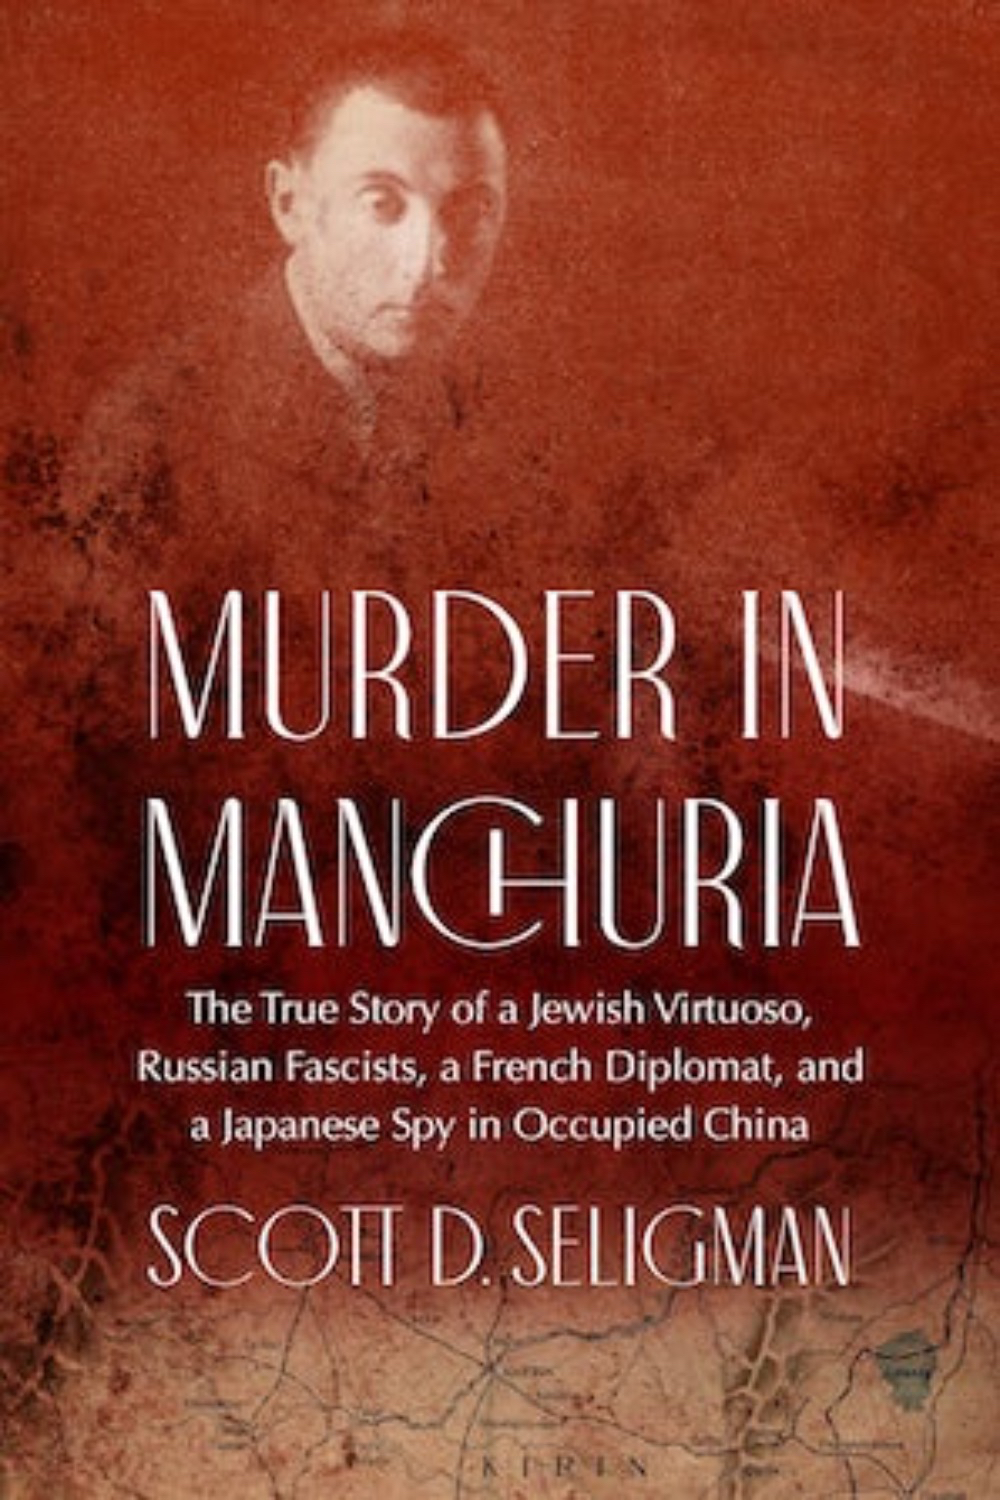 Murder in Manchuria by Scott Seligman